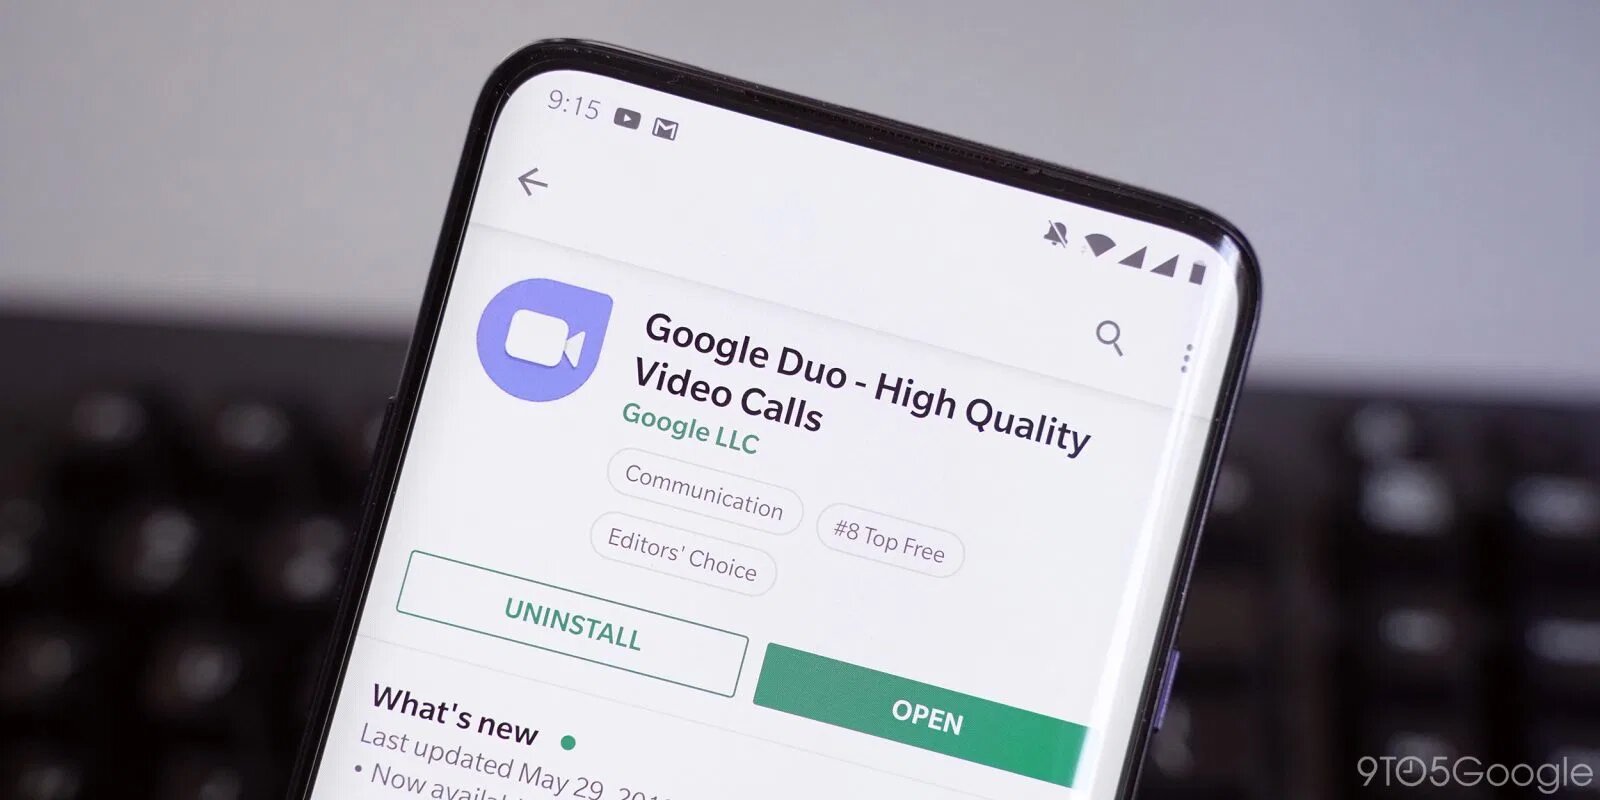  Panggilan Video Google Duo Kini Bisa dari Browser